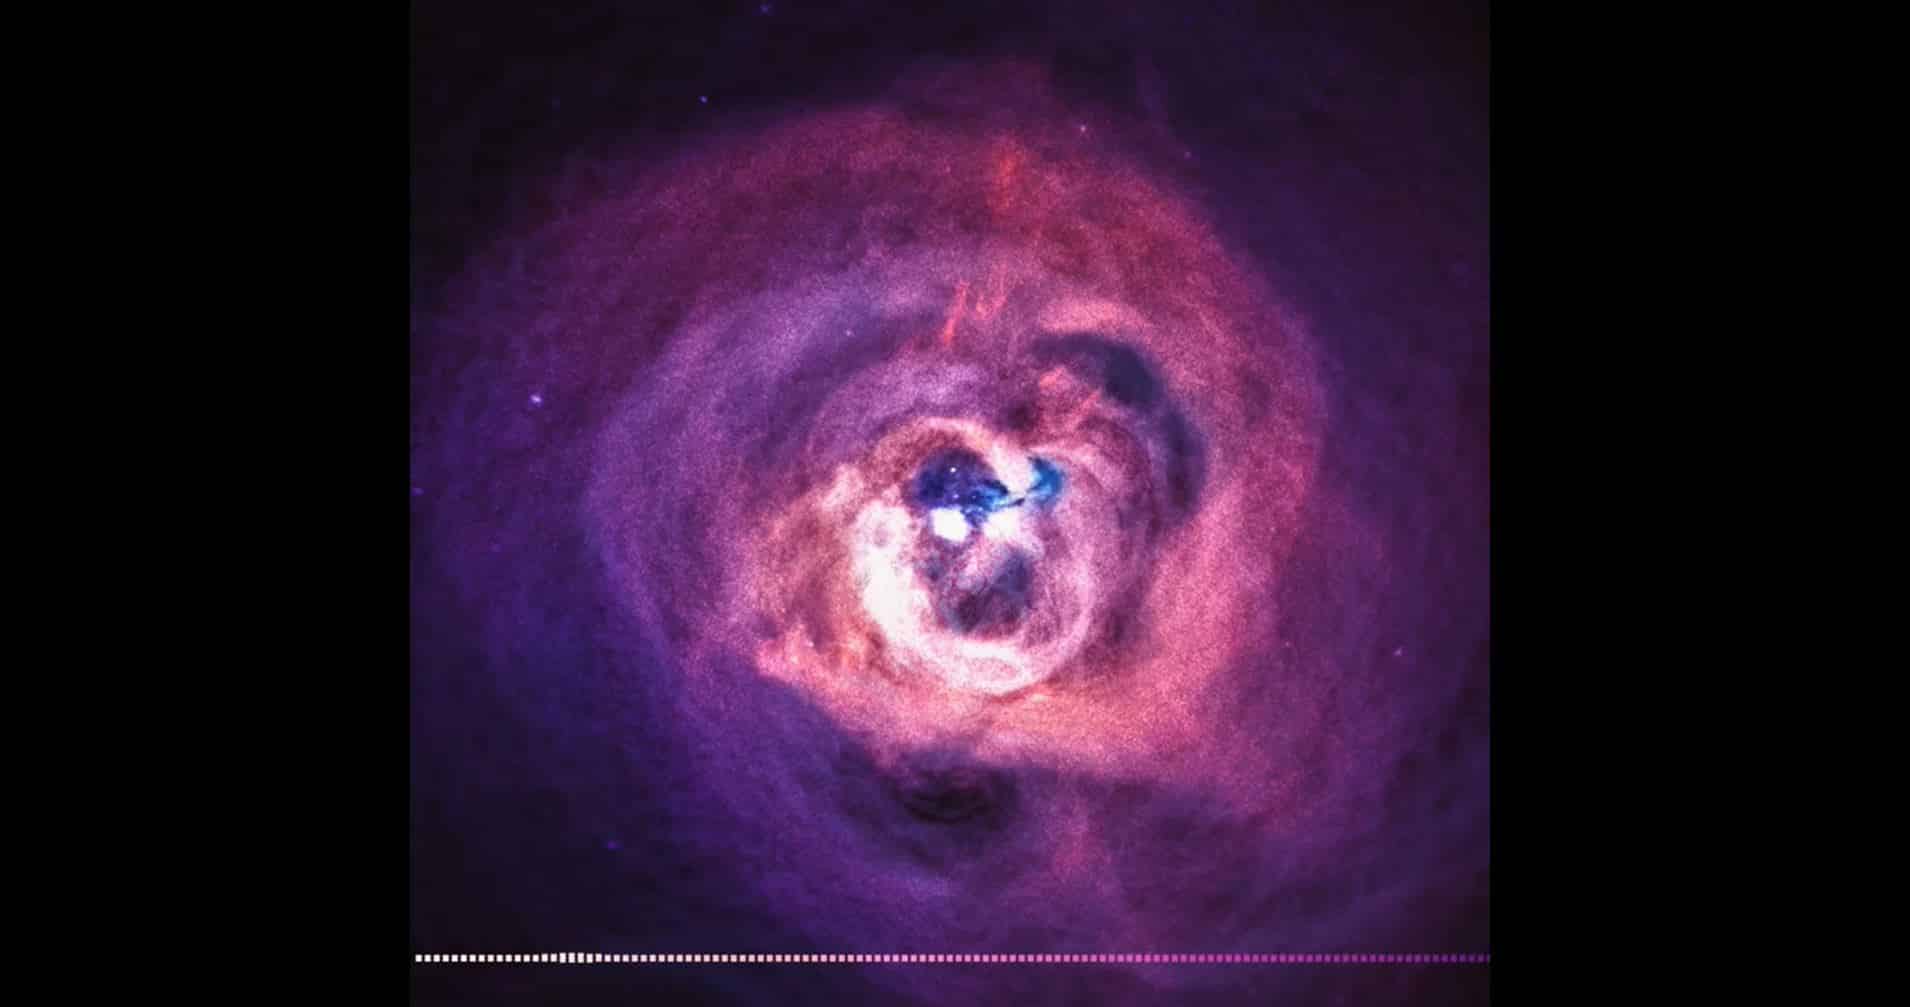 Agujero negro en el centro de la galaxia de Perseo.